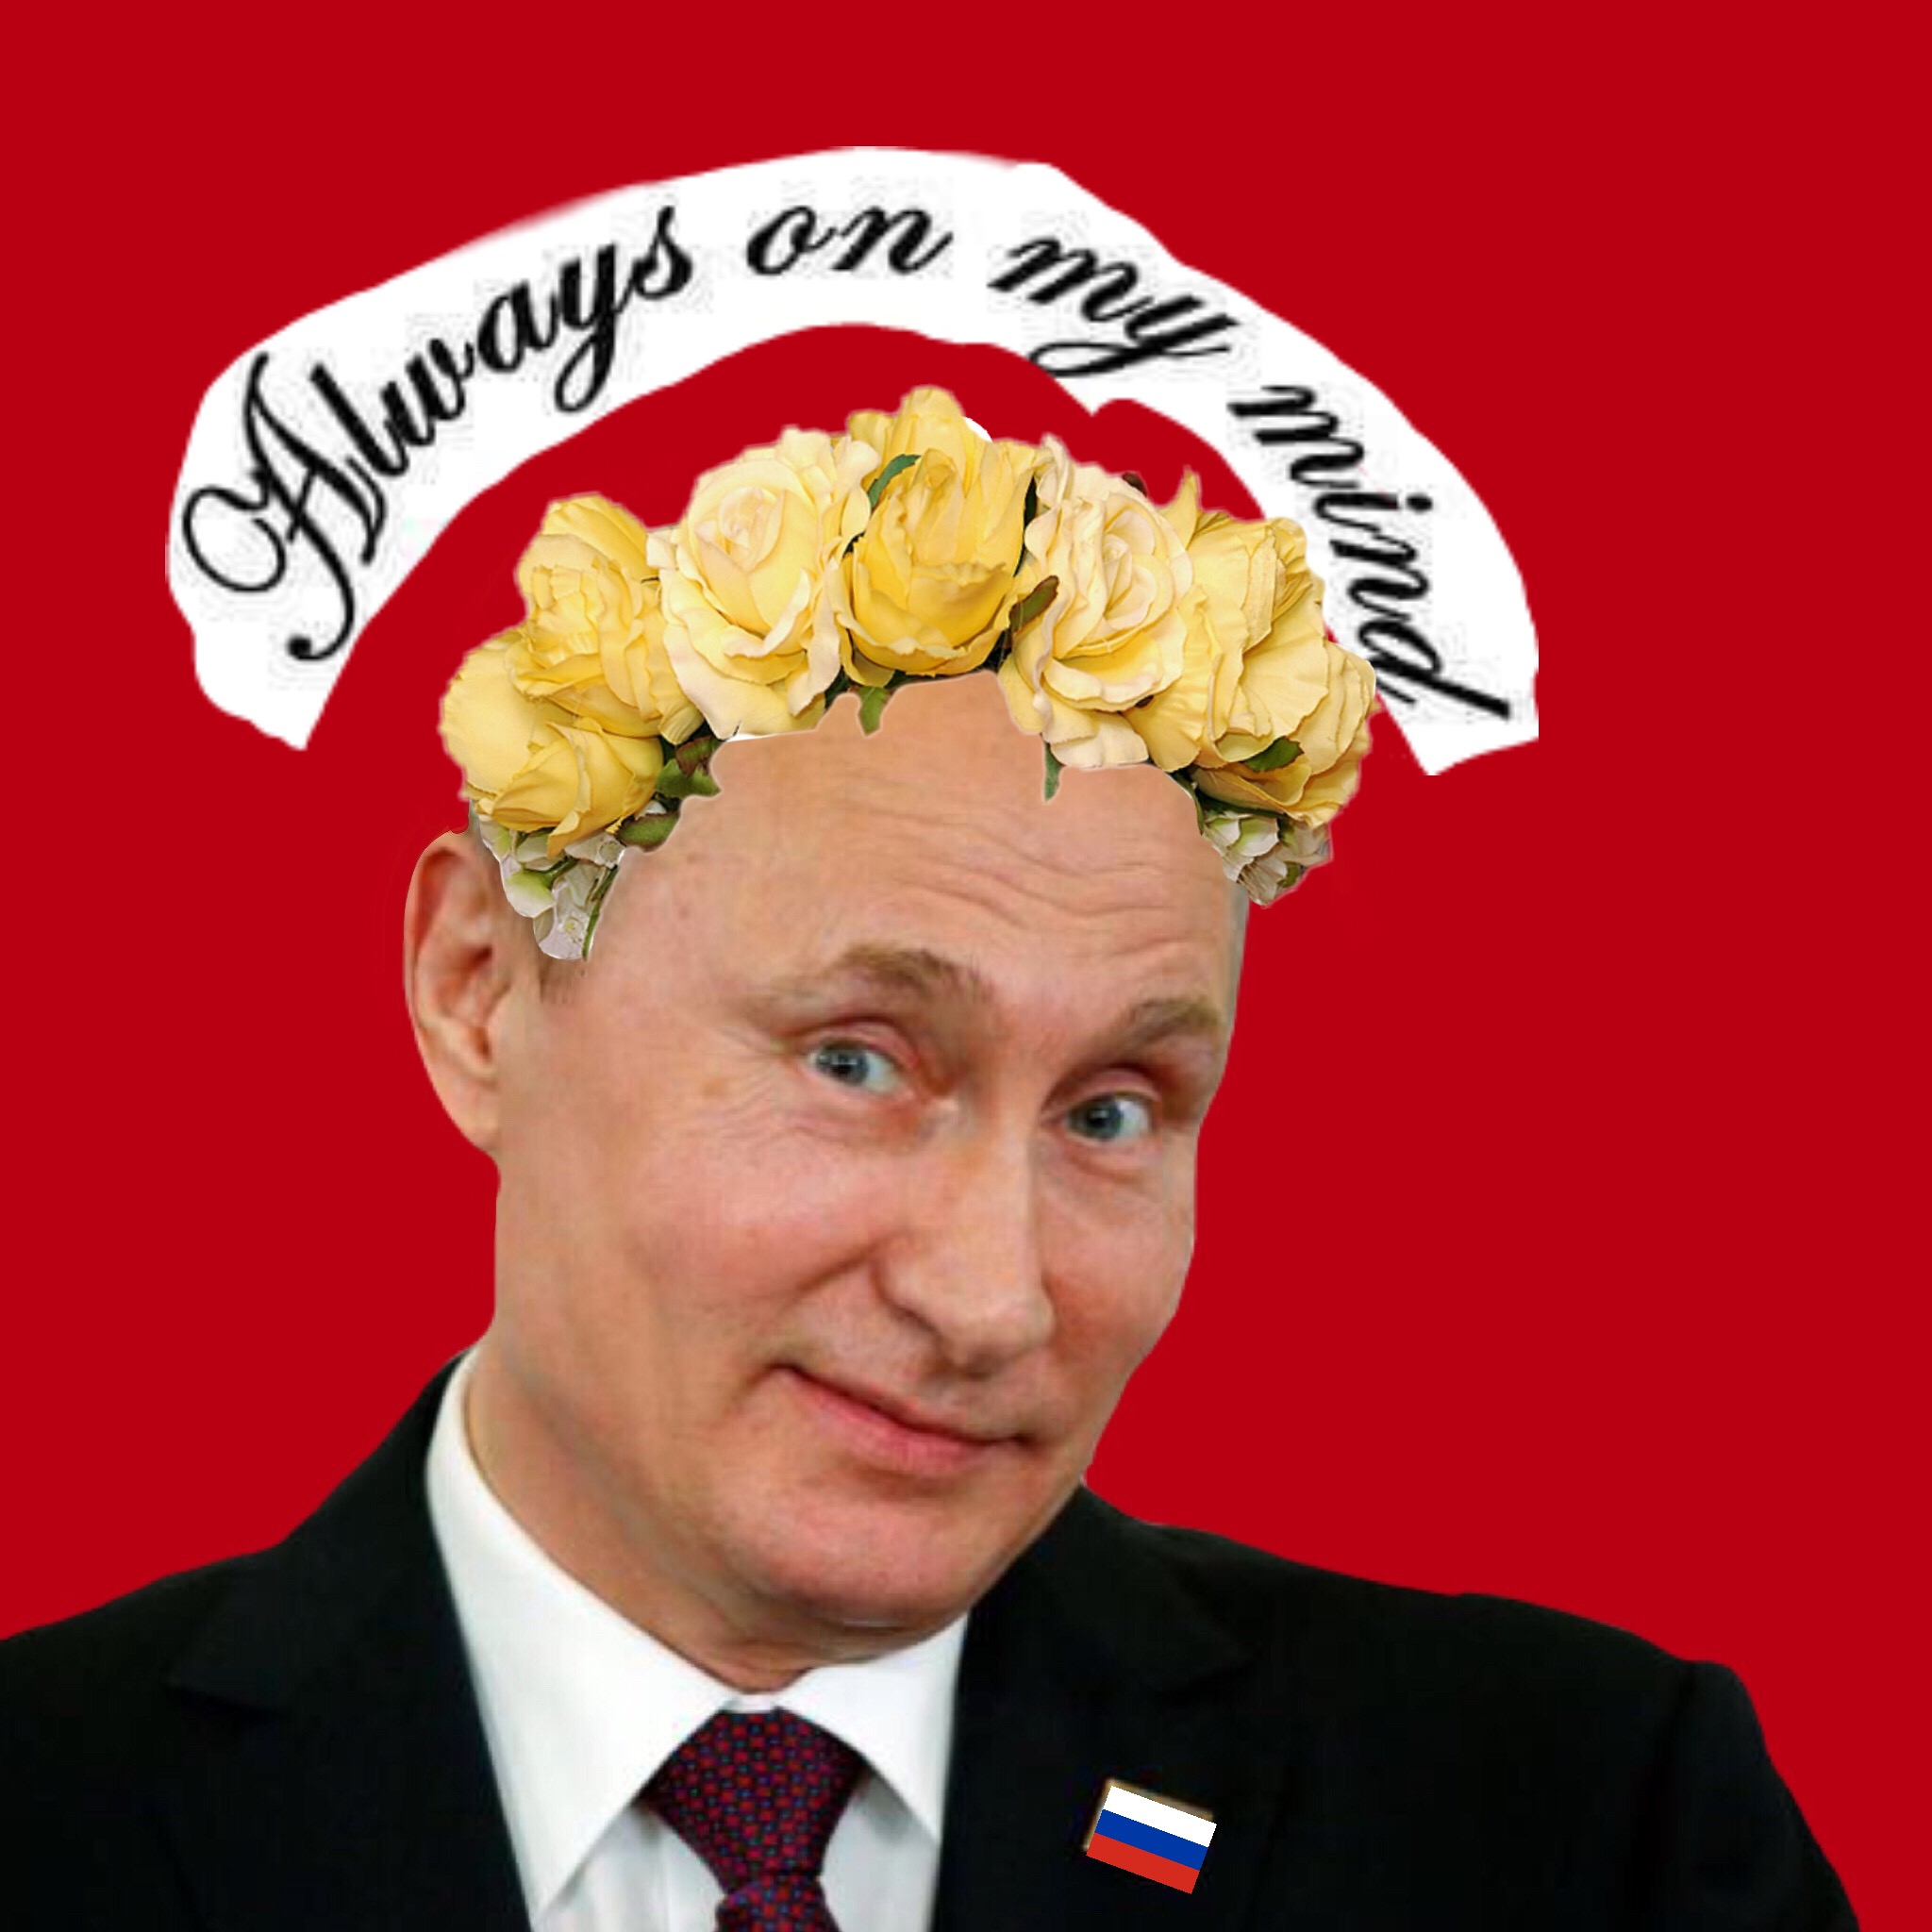 Поздравление Илье От Путина